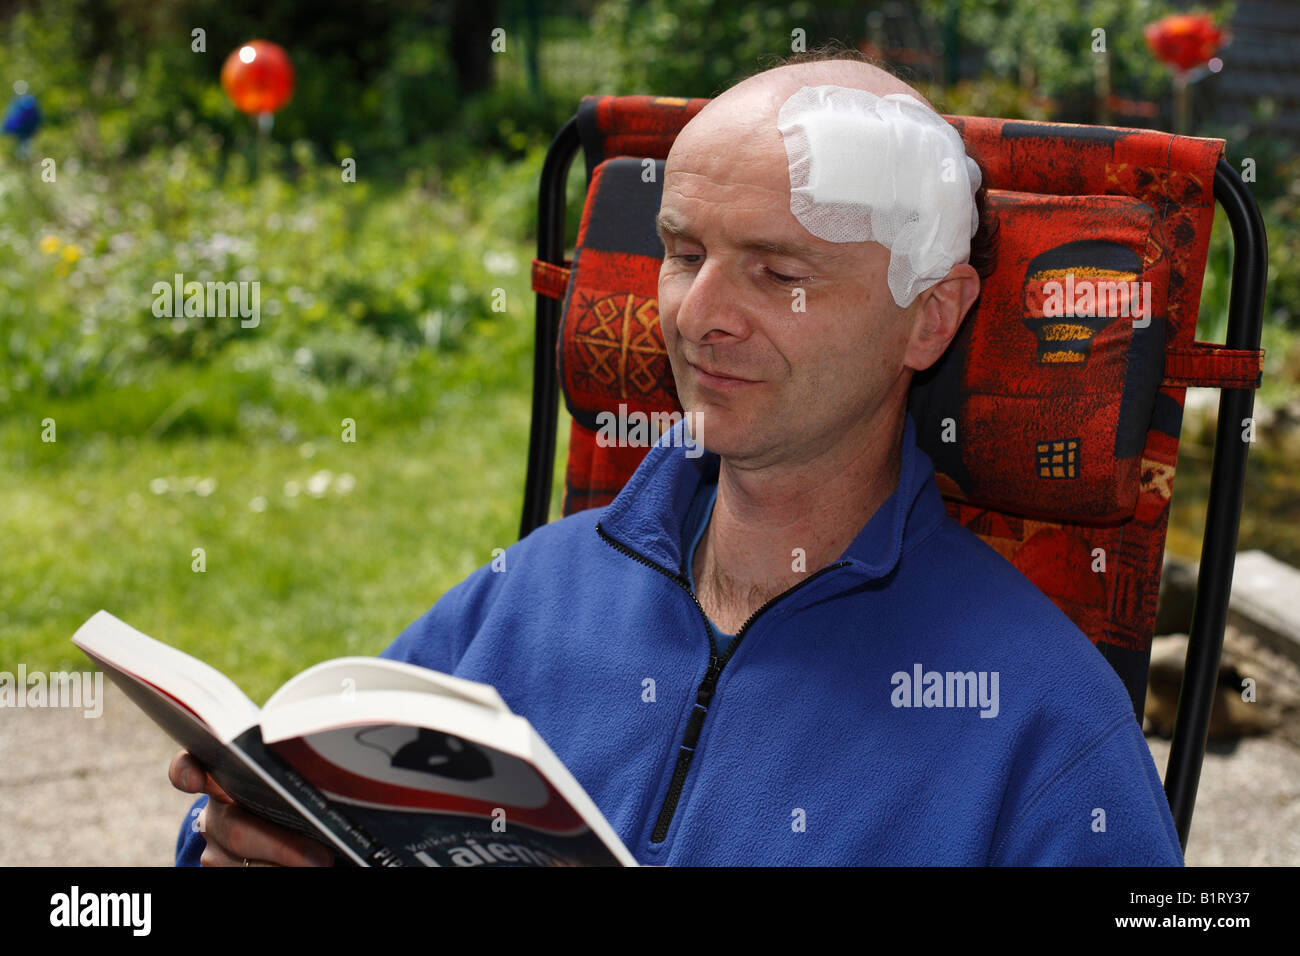 El hombre, de 45 años, con una venda adhesiva sobre su cabeza, Sentado en una silla de jardín leyendo un libro, Geretsried, Baviera, Alemania, Europa Foto de stock